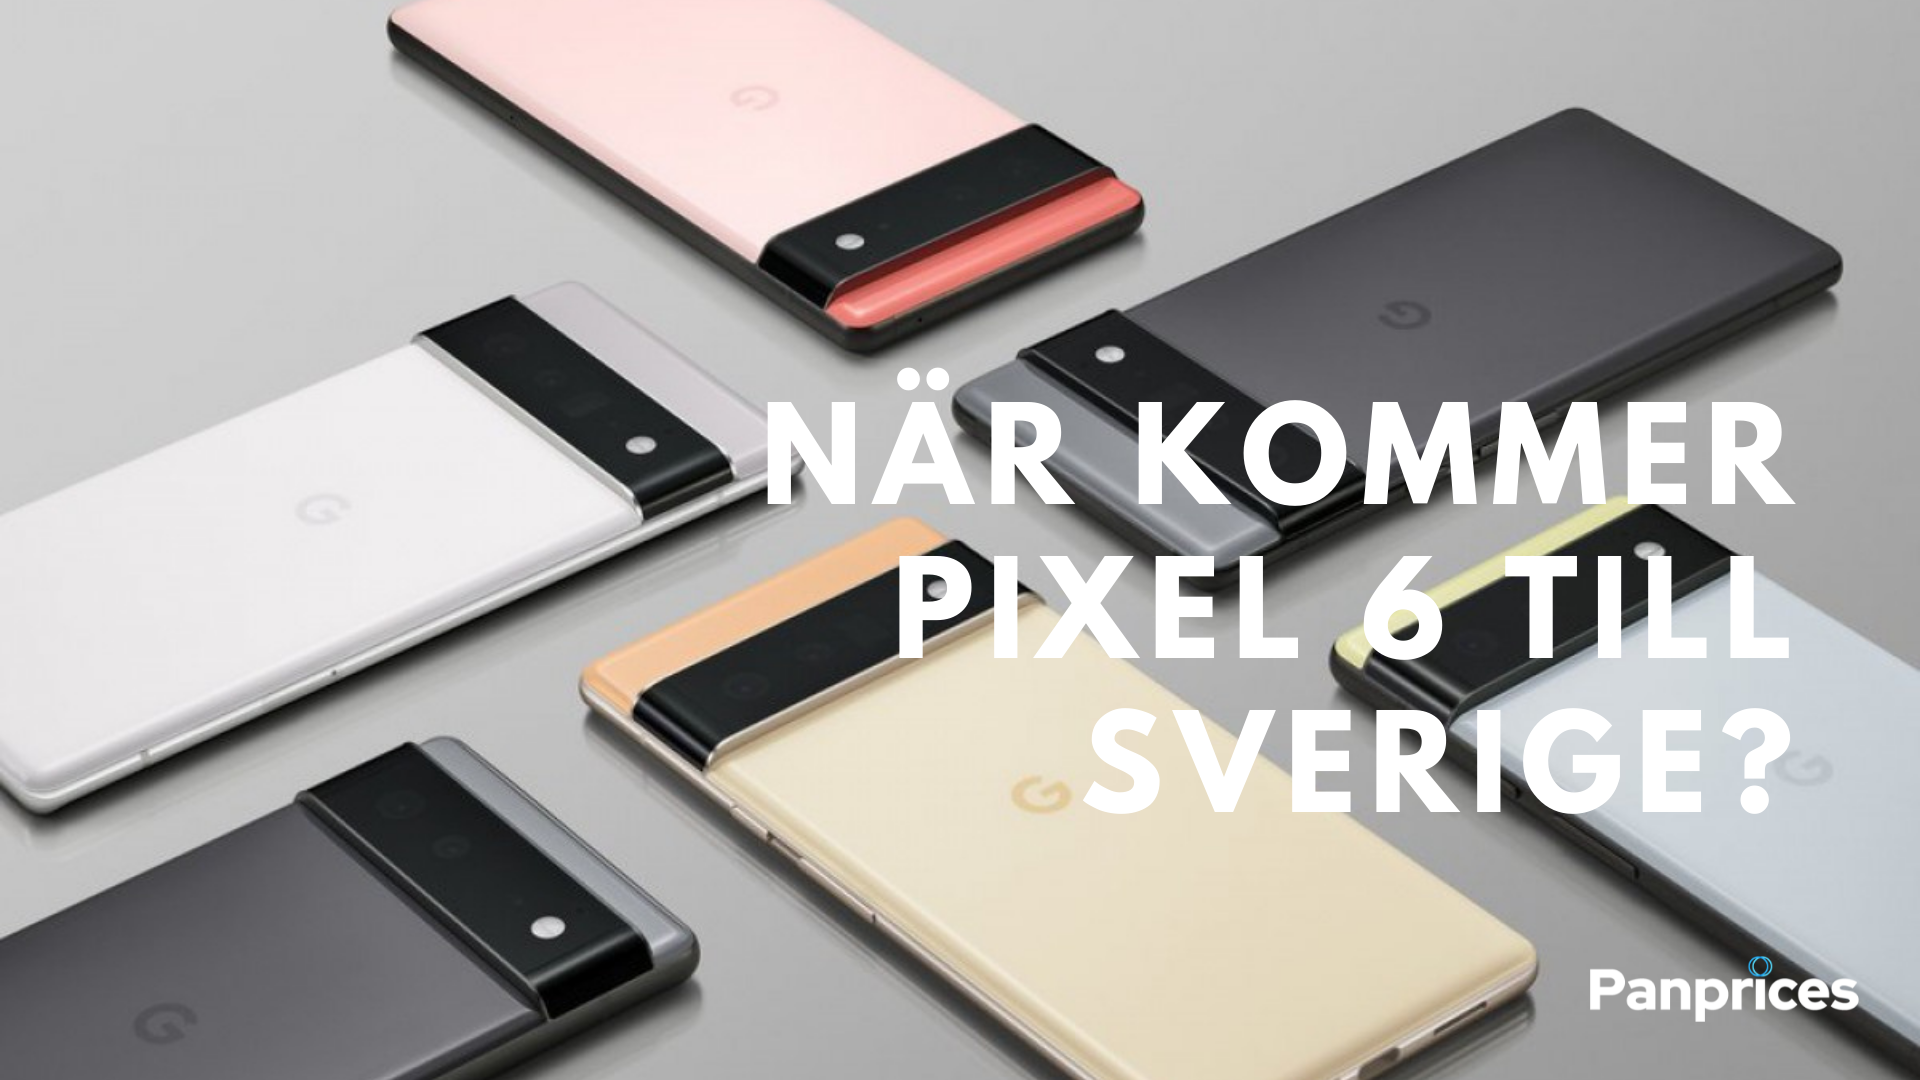 When will Pixel 6 arrive in Sweden?